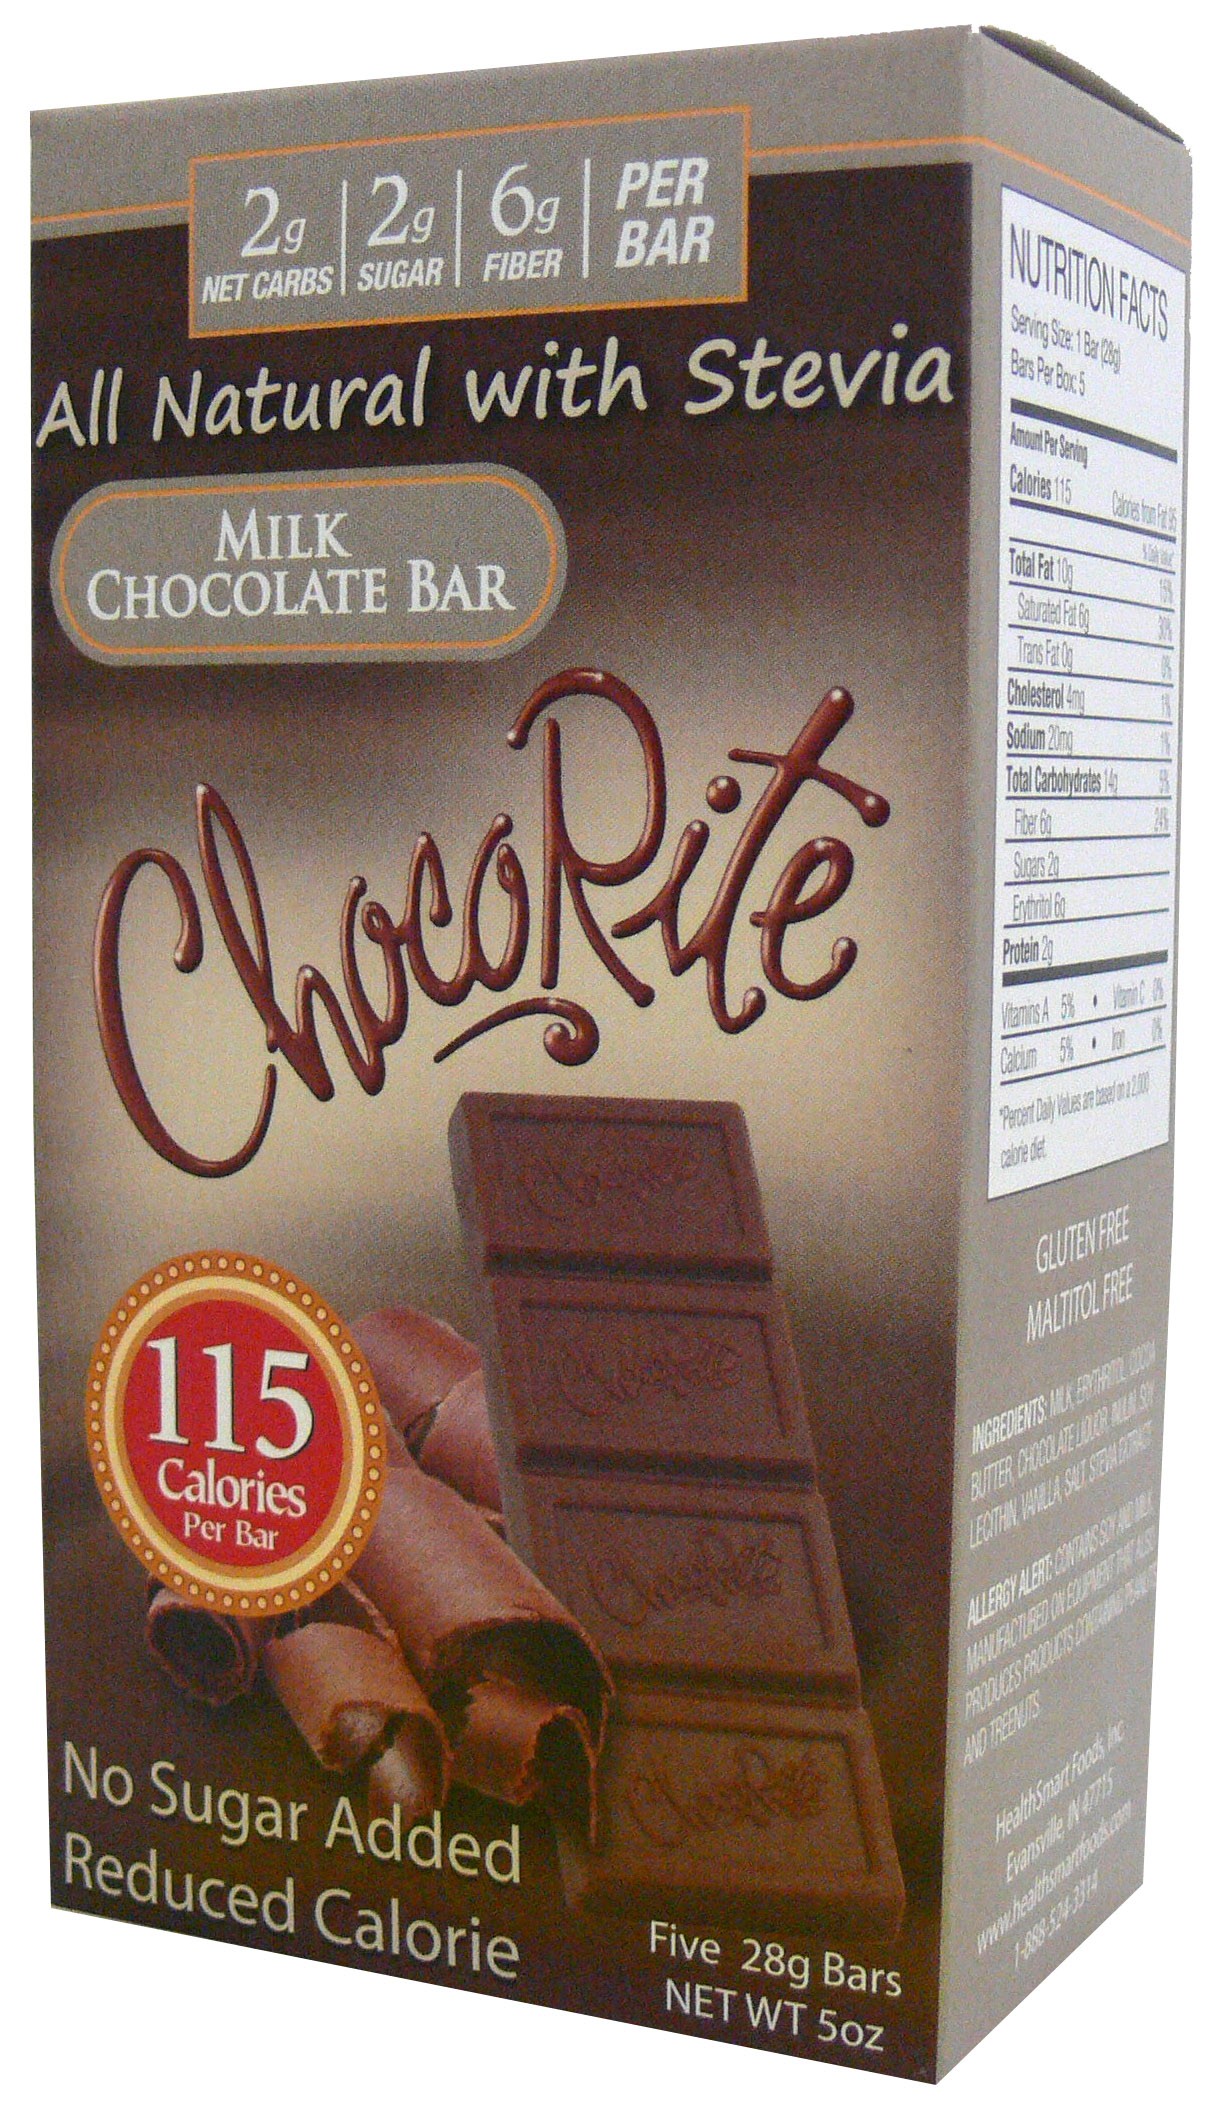 ChocoRite Milk Chocolate Bars